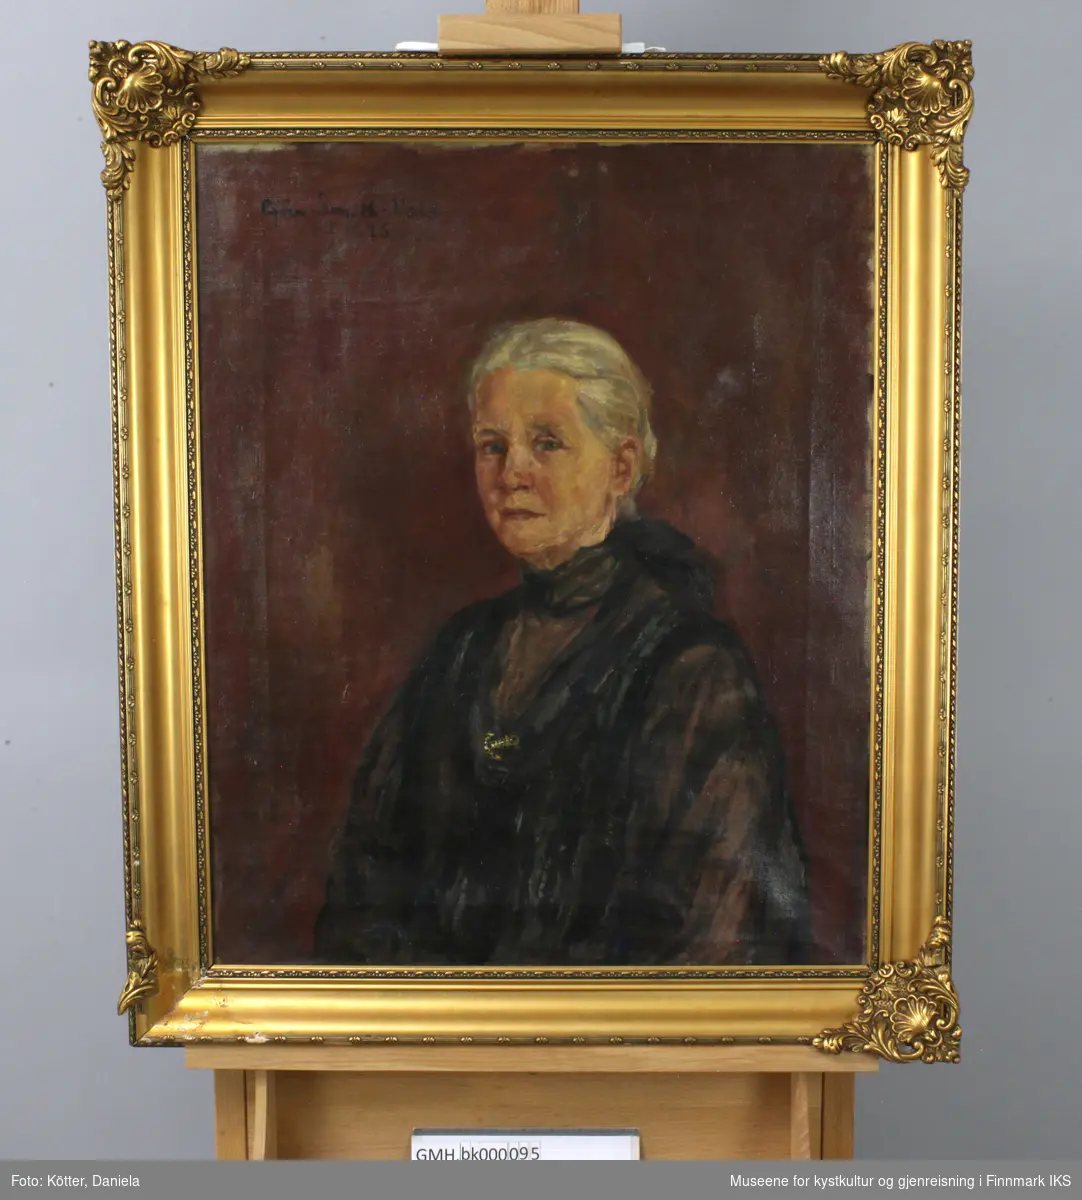 Emilie Birgitte Eckmann er portrettert som eldre dame. Det gråe håret er satt opp til en kute i nakken. Hun er ikledd mørke klær og en slags tynn kåpe som holdes sammen over brystet med en brosje utformet som anker.  Bakgrunnen er utført i mørke rødnyanser. Kunstneren Bjørn Smith-Hald sin signatur med datering 1925 i øvre venstre hjørnet. Bildet ble utført ti år før den avbildede døde.